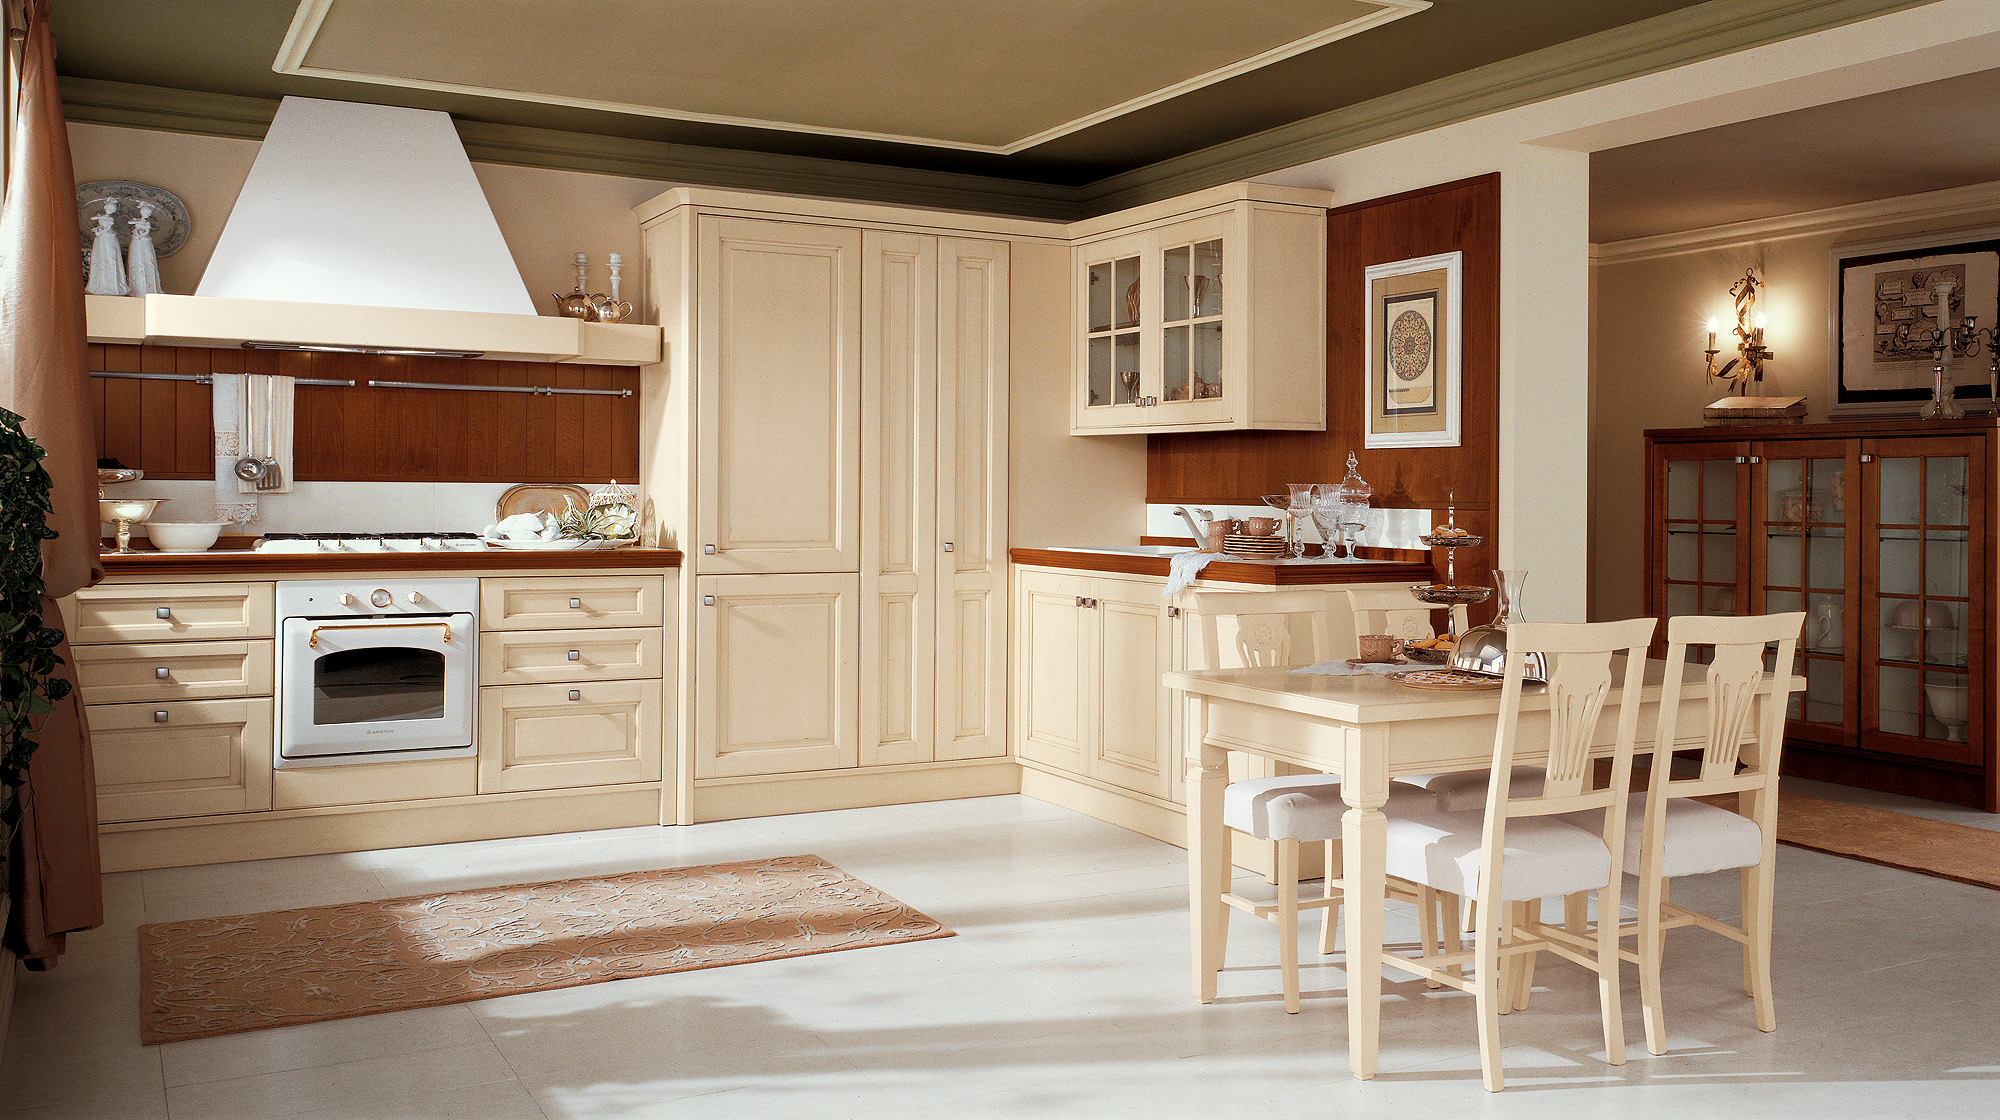 mooi design van beige keuken in provence stijl